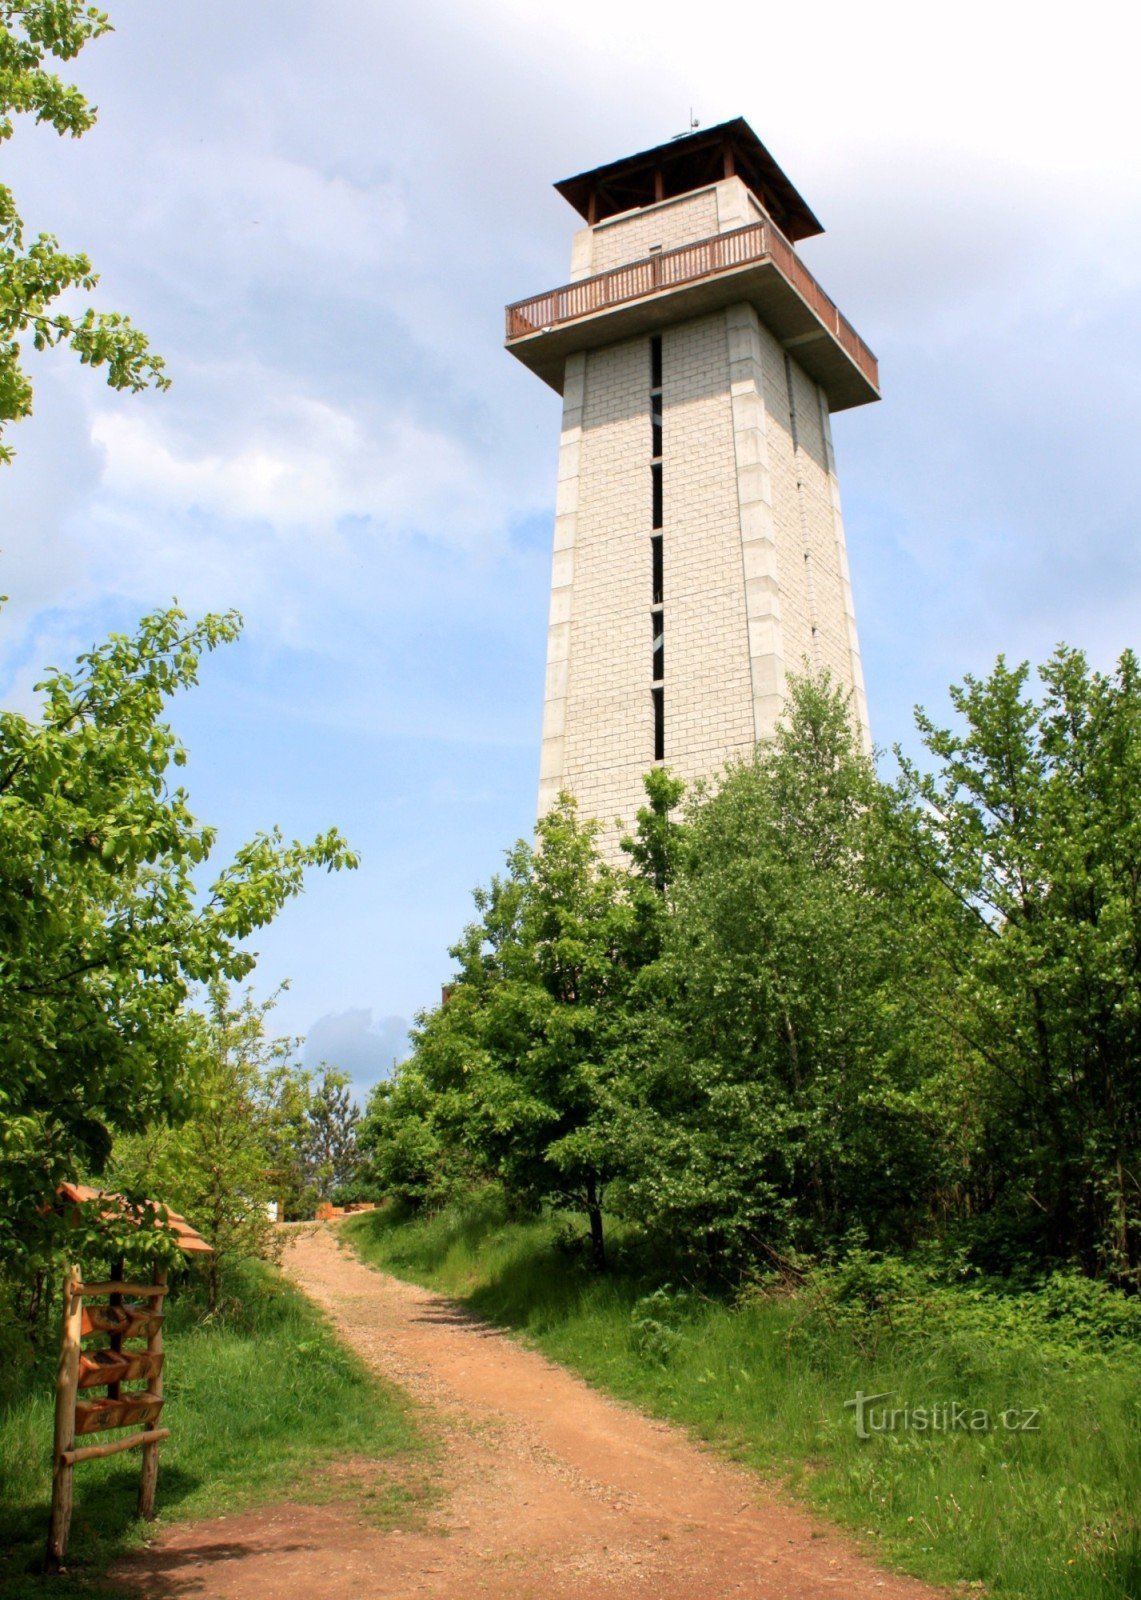 Klucanina udsigtstårn